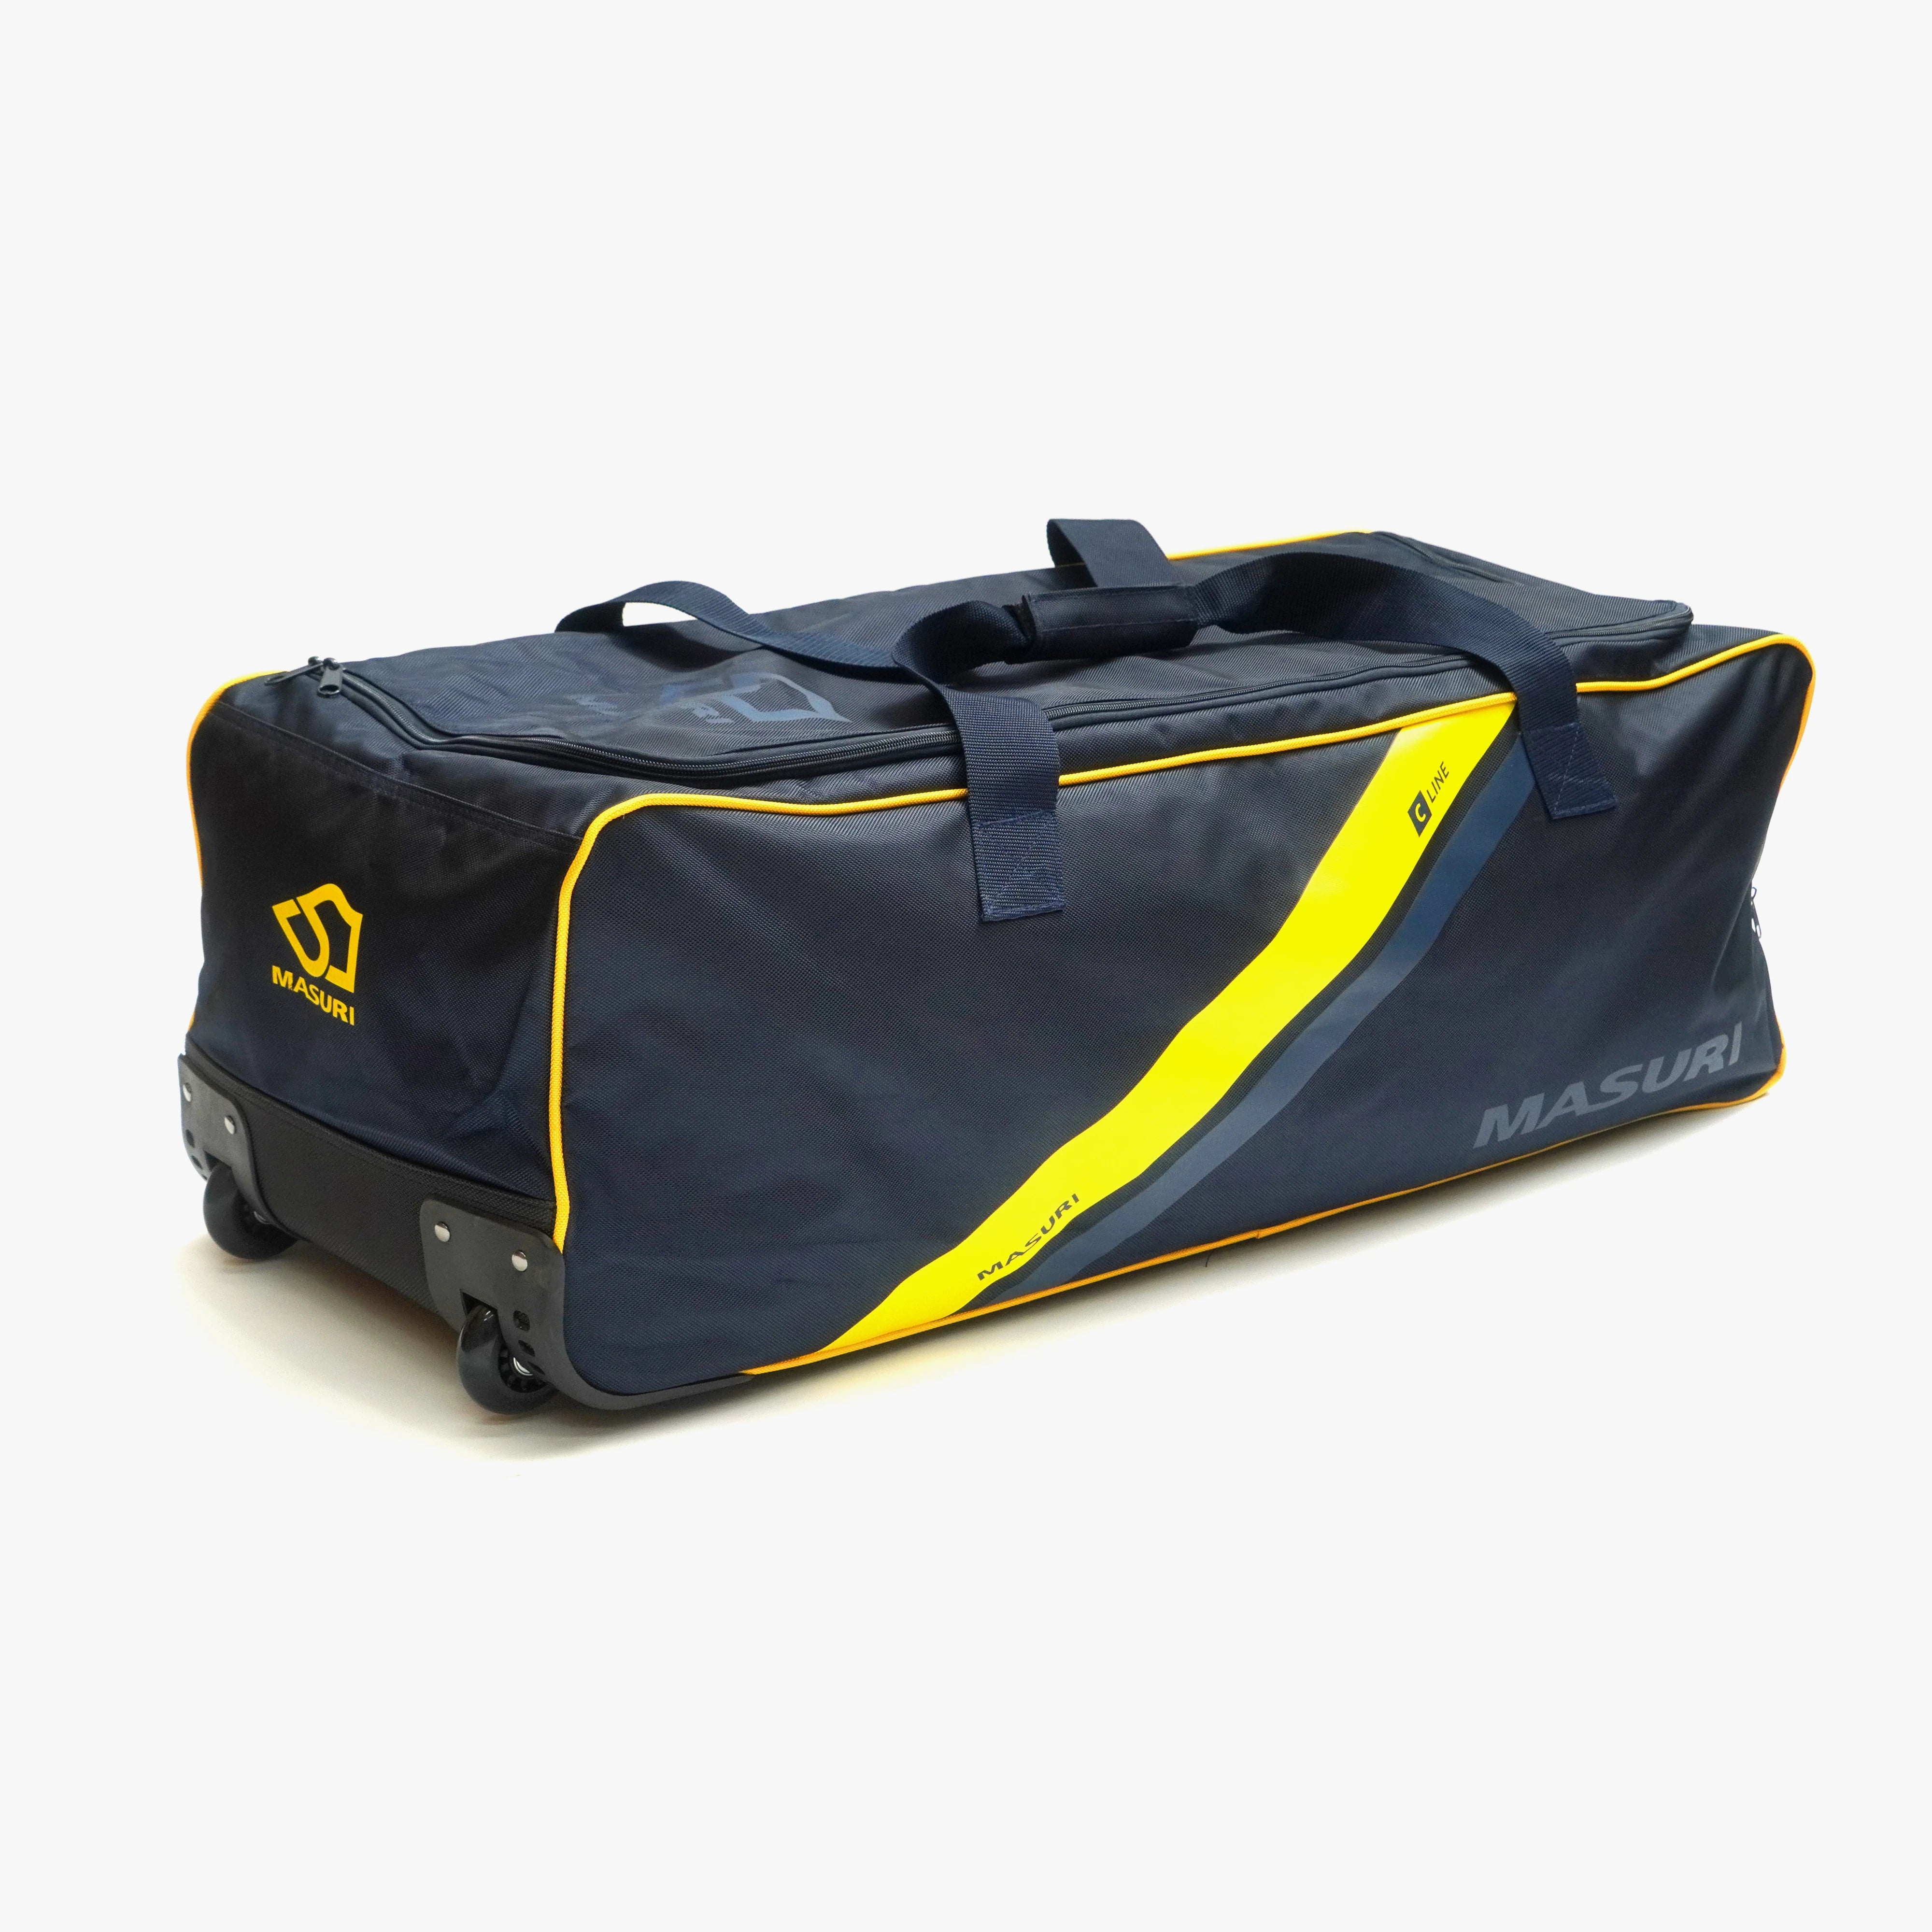 Masuri C line Wheelie Cricket Kit Bag